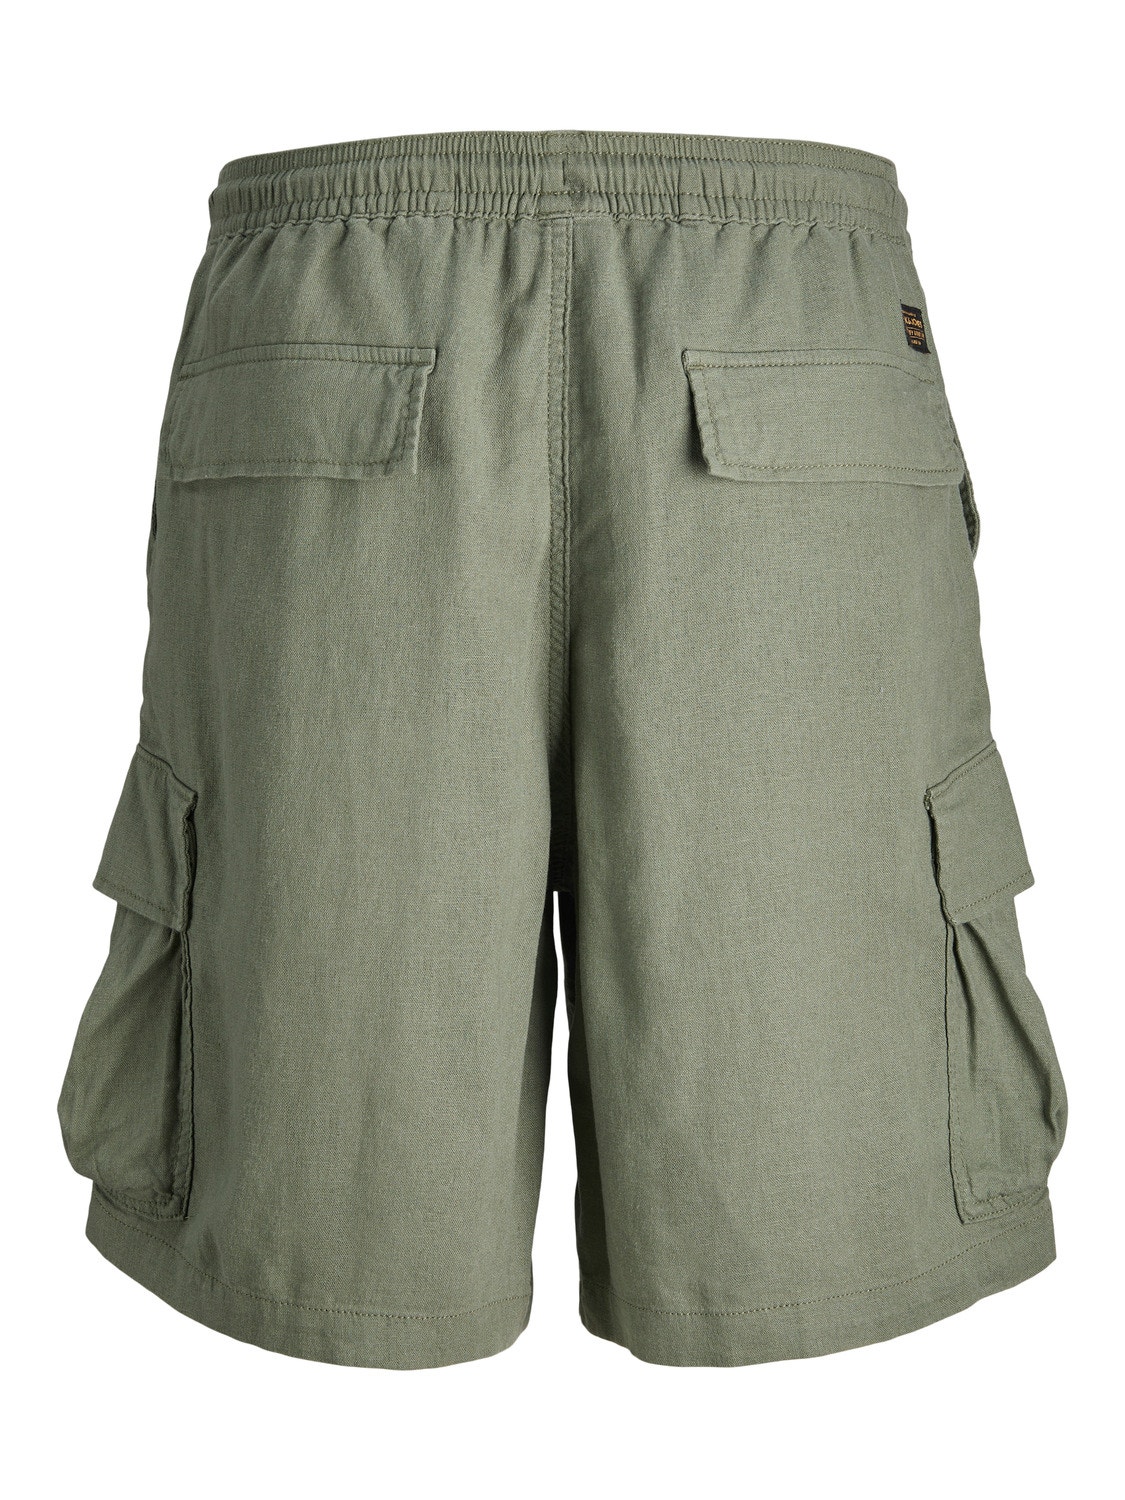 Jack & Jones Loose Fit Cargo shorts Voor jongens -Laurel Wreath - 12255664